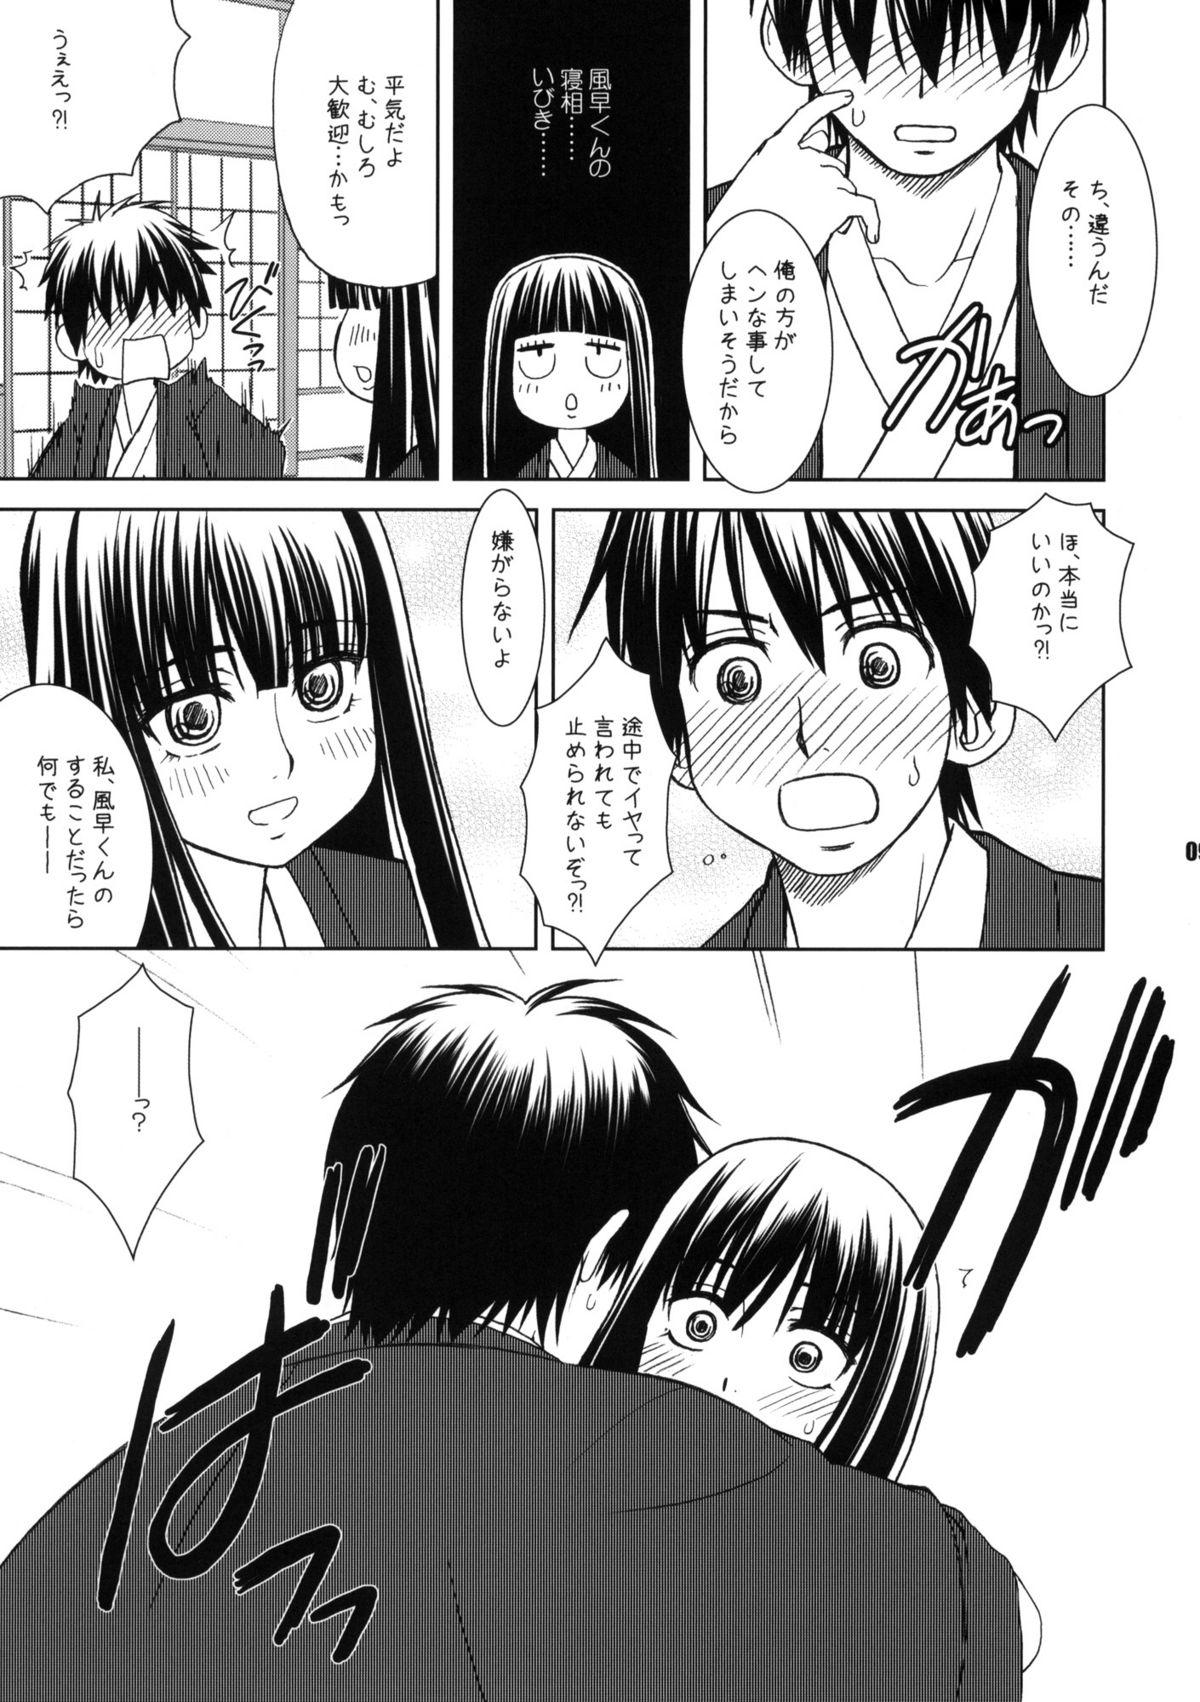 Boy Girl Kimi no Uta Boku no Uta - Kimi ni todoke Soapy Massage - Page 8